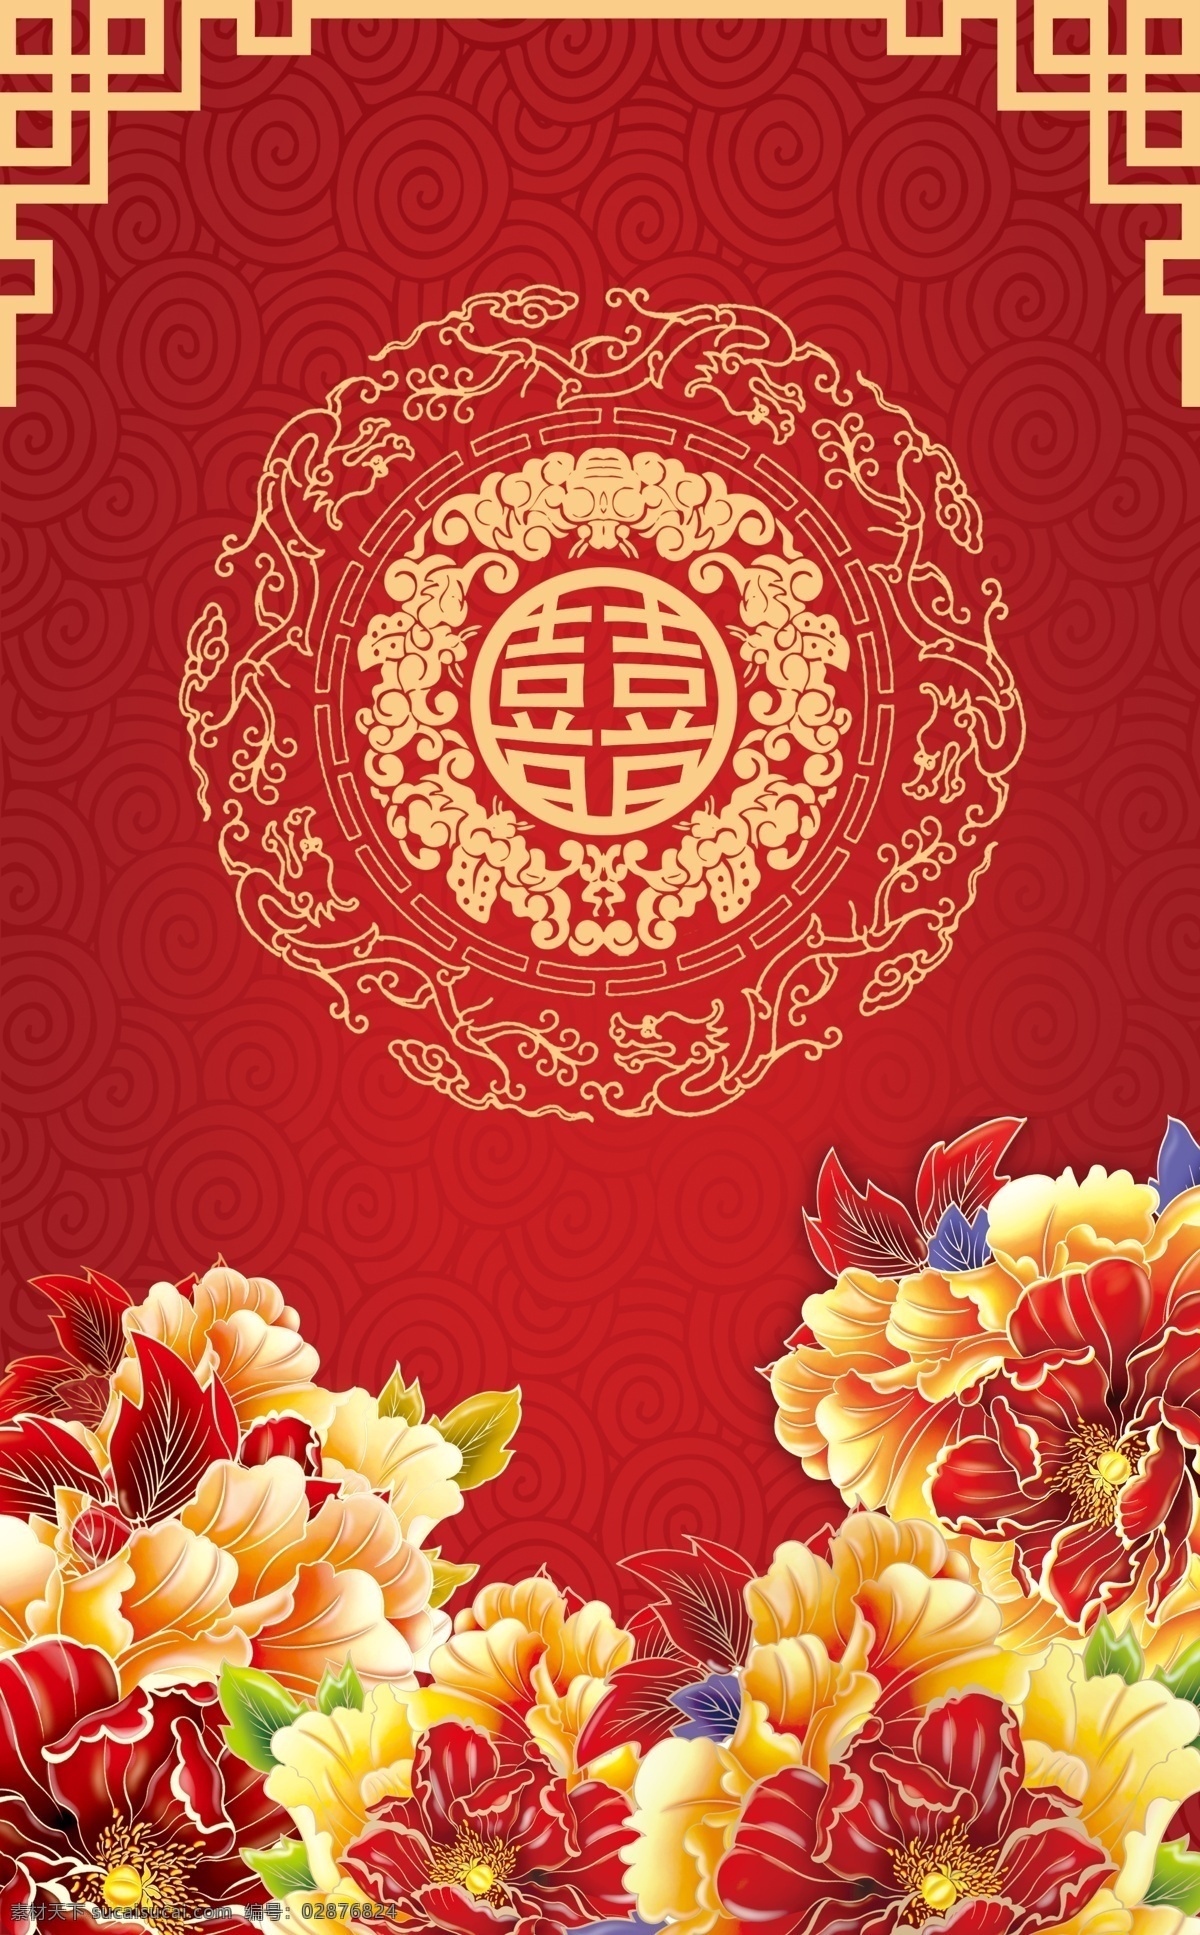 中式婚礼主题 中式婚礼 中国红 牡丹 传统婚礼 边框 角花 双喜 logo 花纹 分成 婚礼 分层